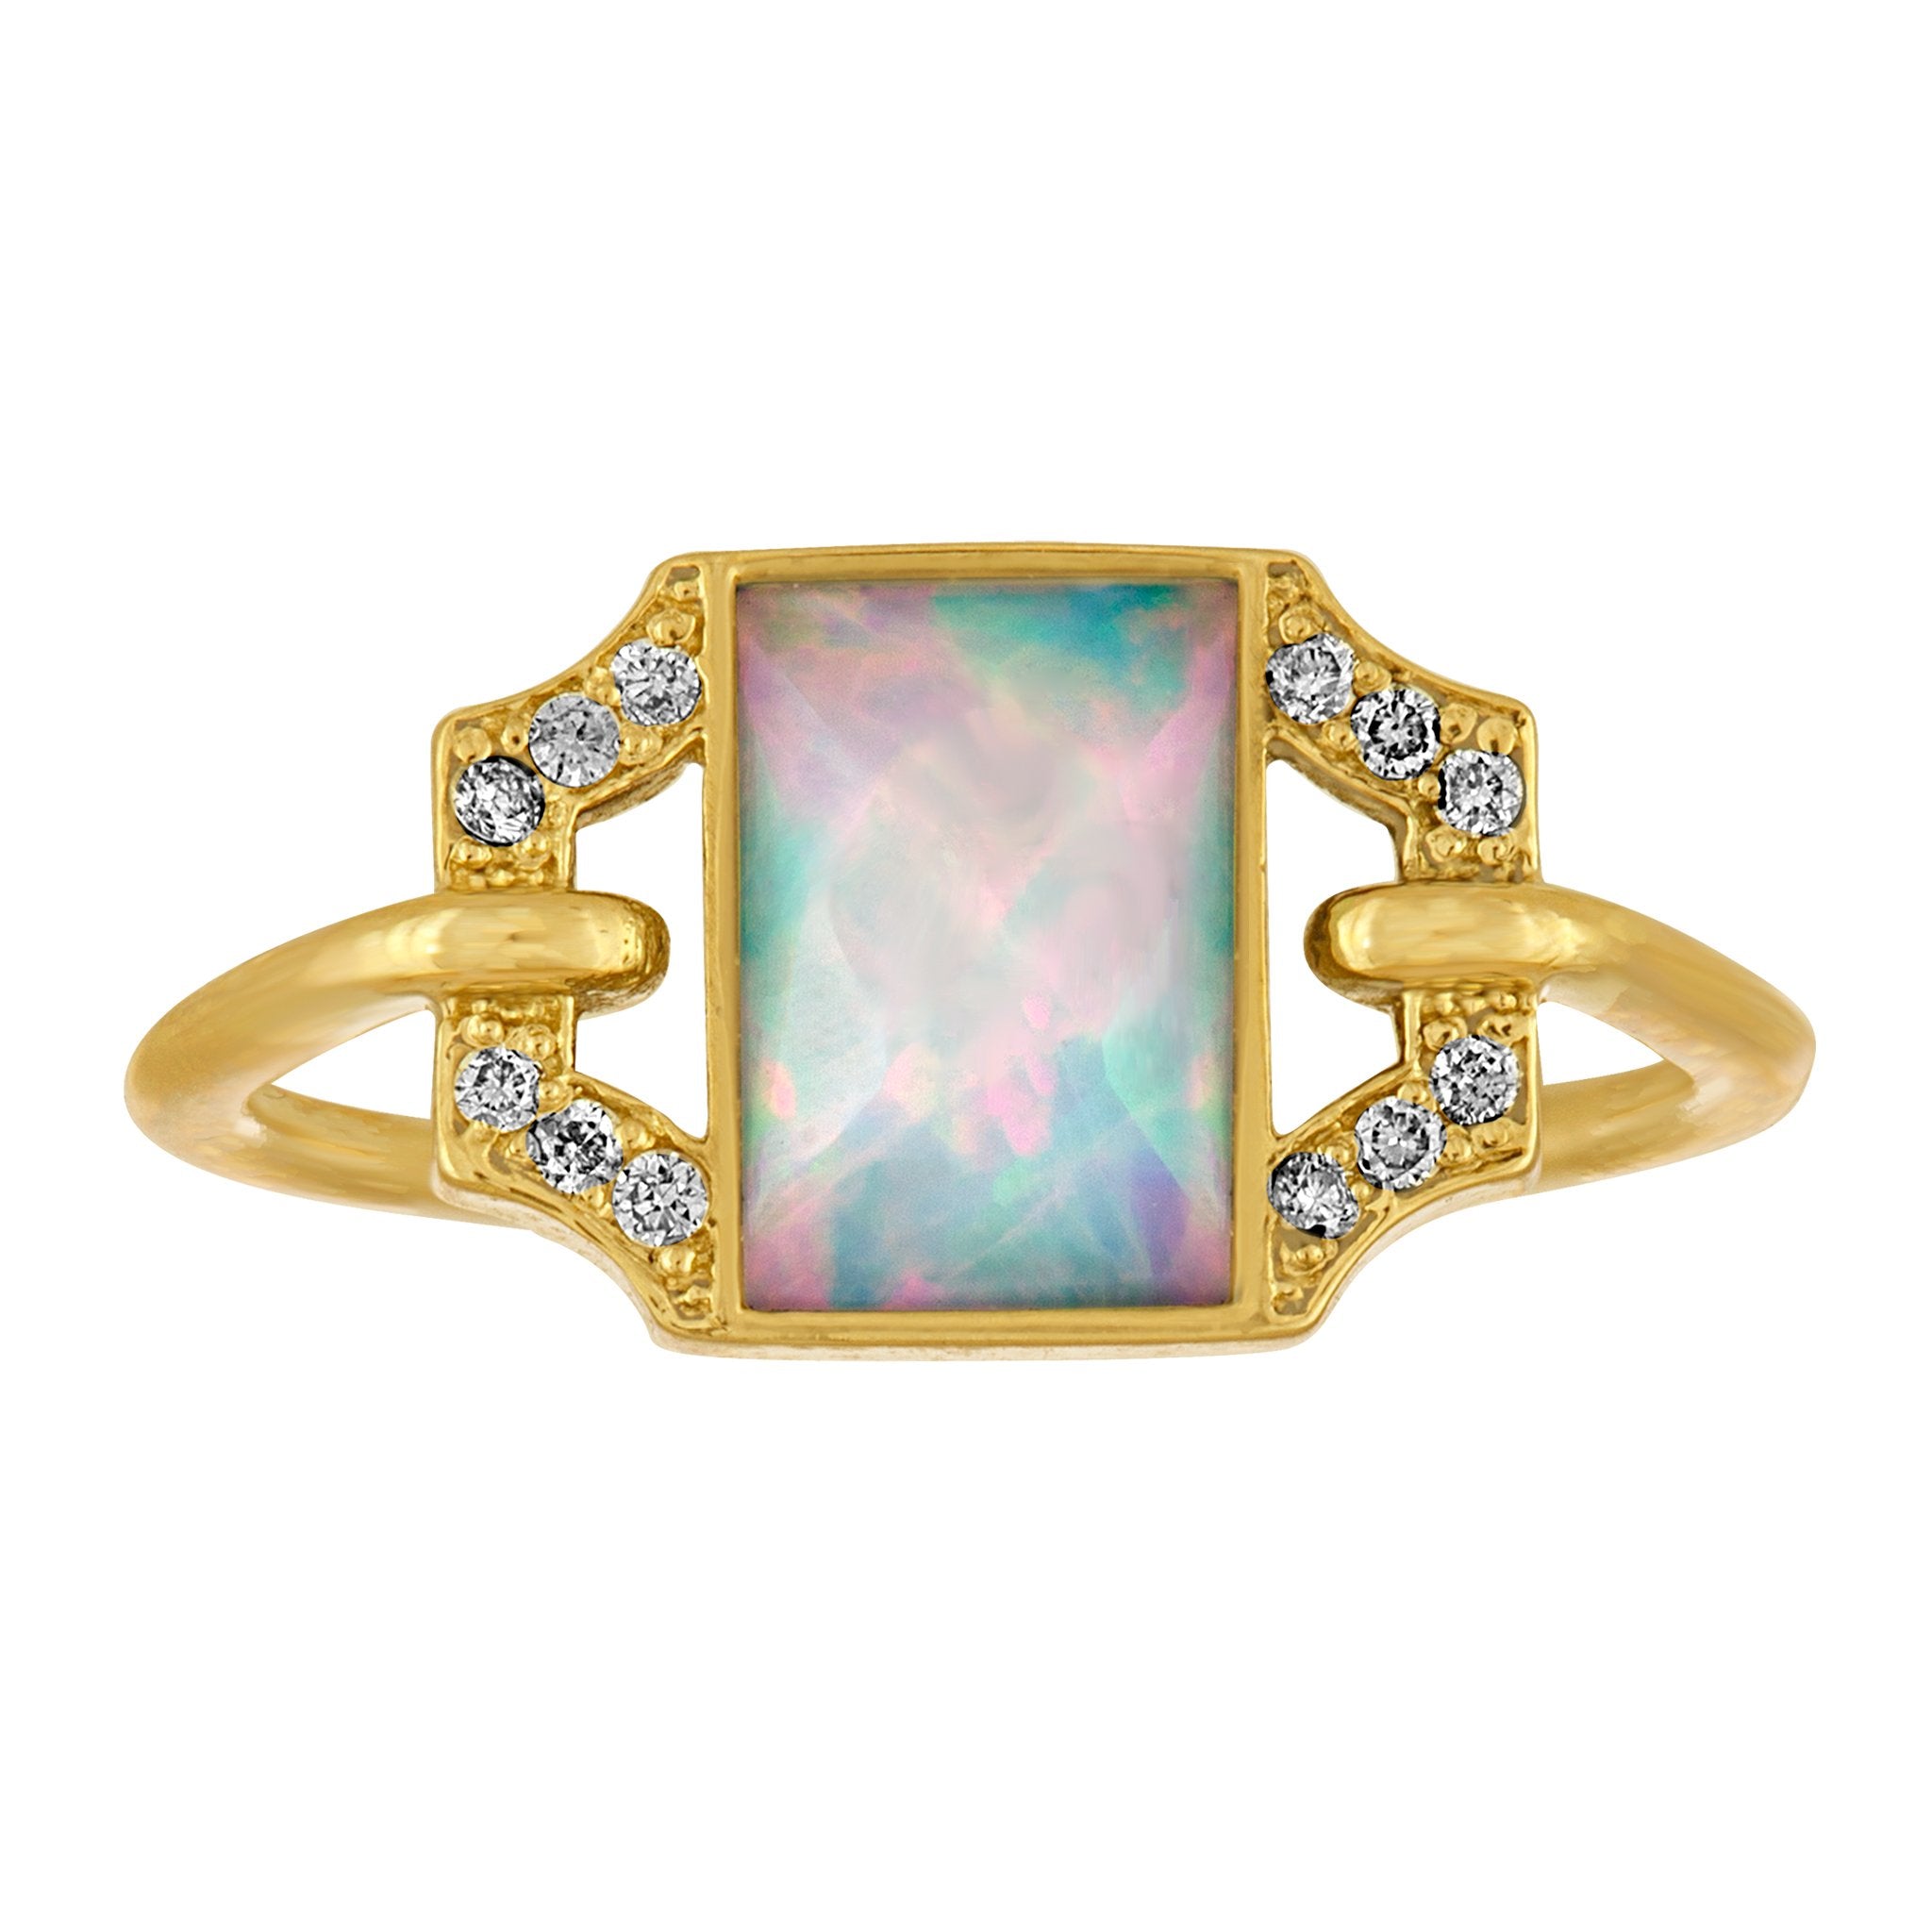 Edge Petite Ring: 18k Gold,Opal, Diamonds